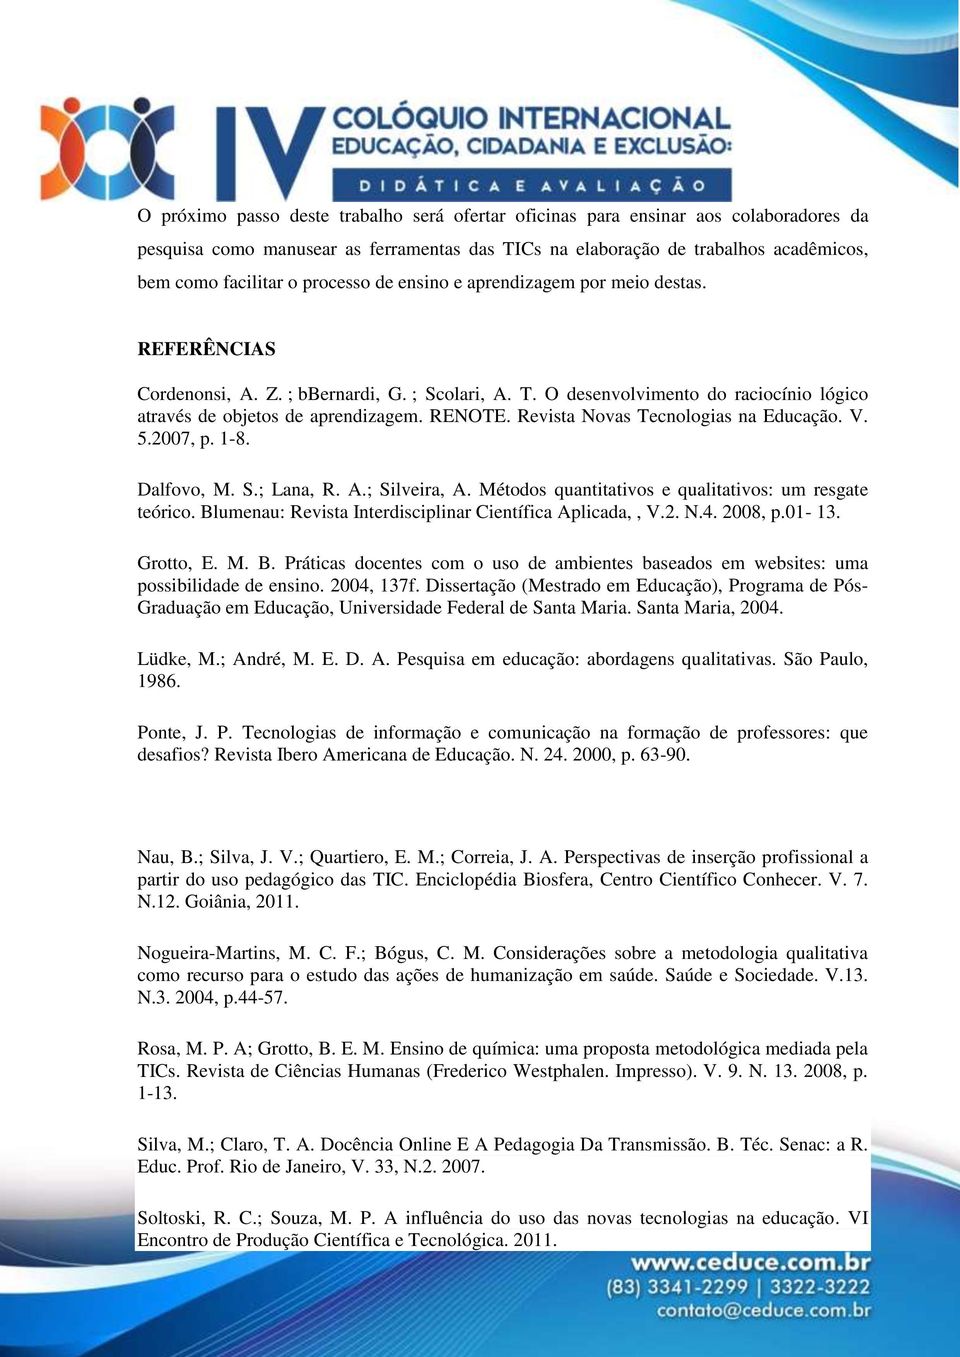 Revista Novas Tecnologias na Educação. V. 5.2007, p. 1-8. Dalfovo, M. S.; Lana, R. A.; Silveira, A. Métodos quantitativos e qualitativos: um resgate teórico.